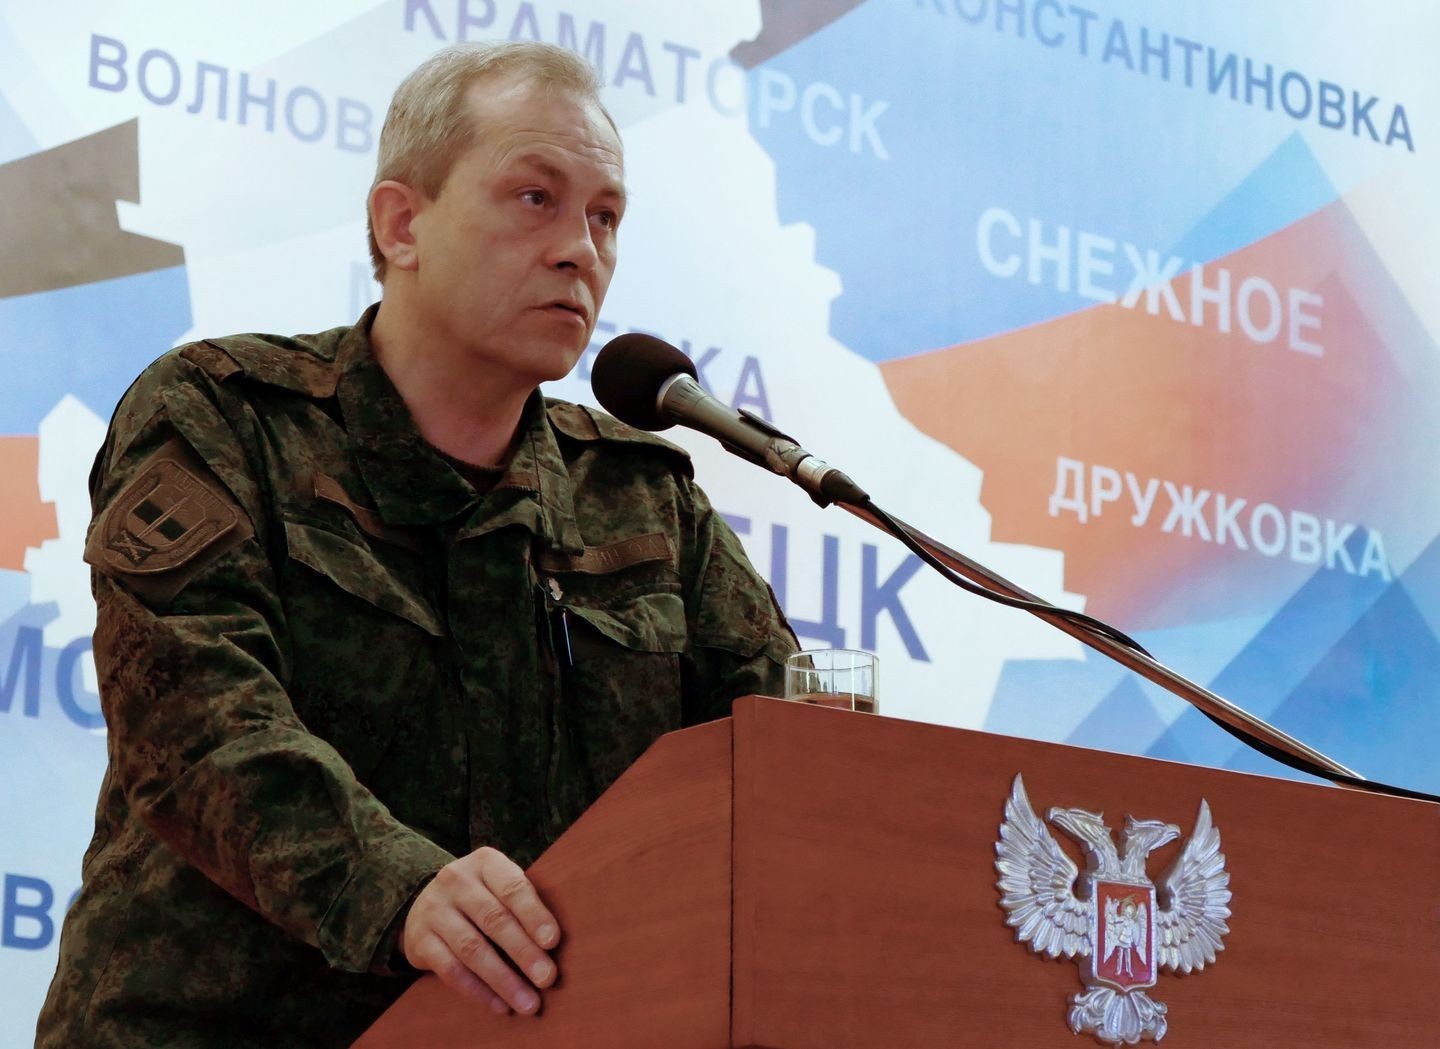 Басурин: Нищая украинская армия закупает снаряды у террористов